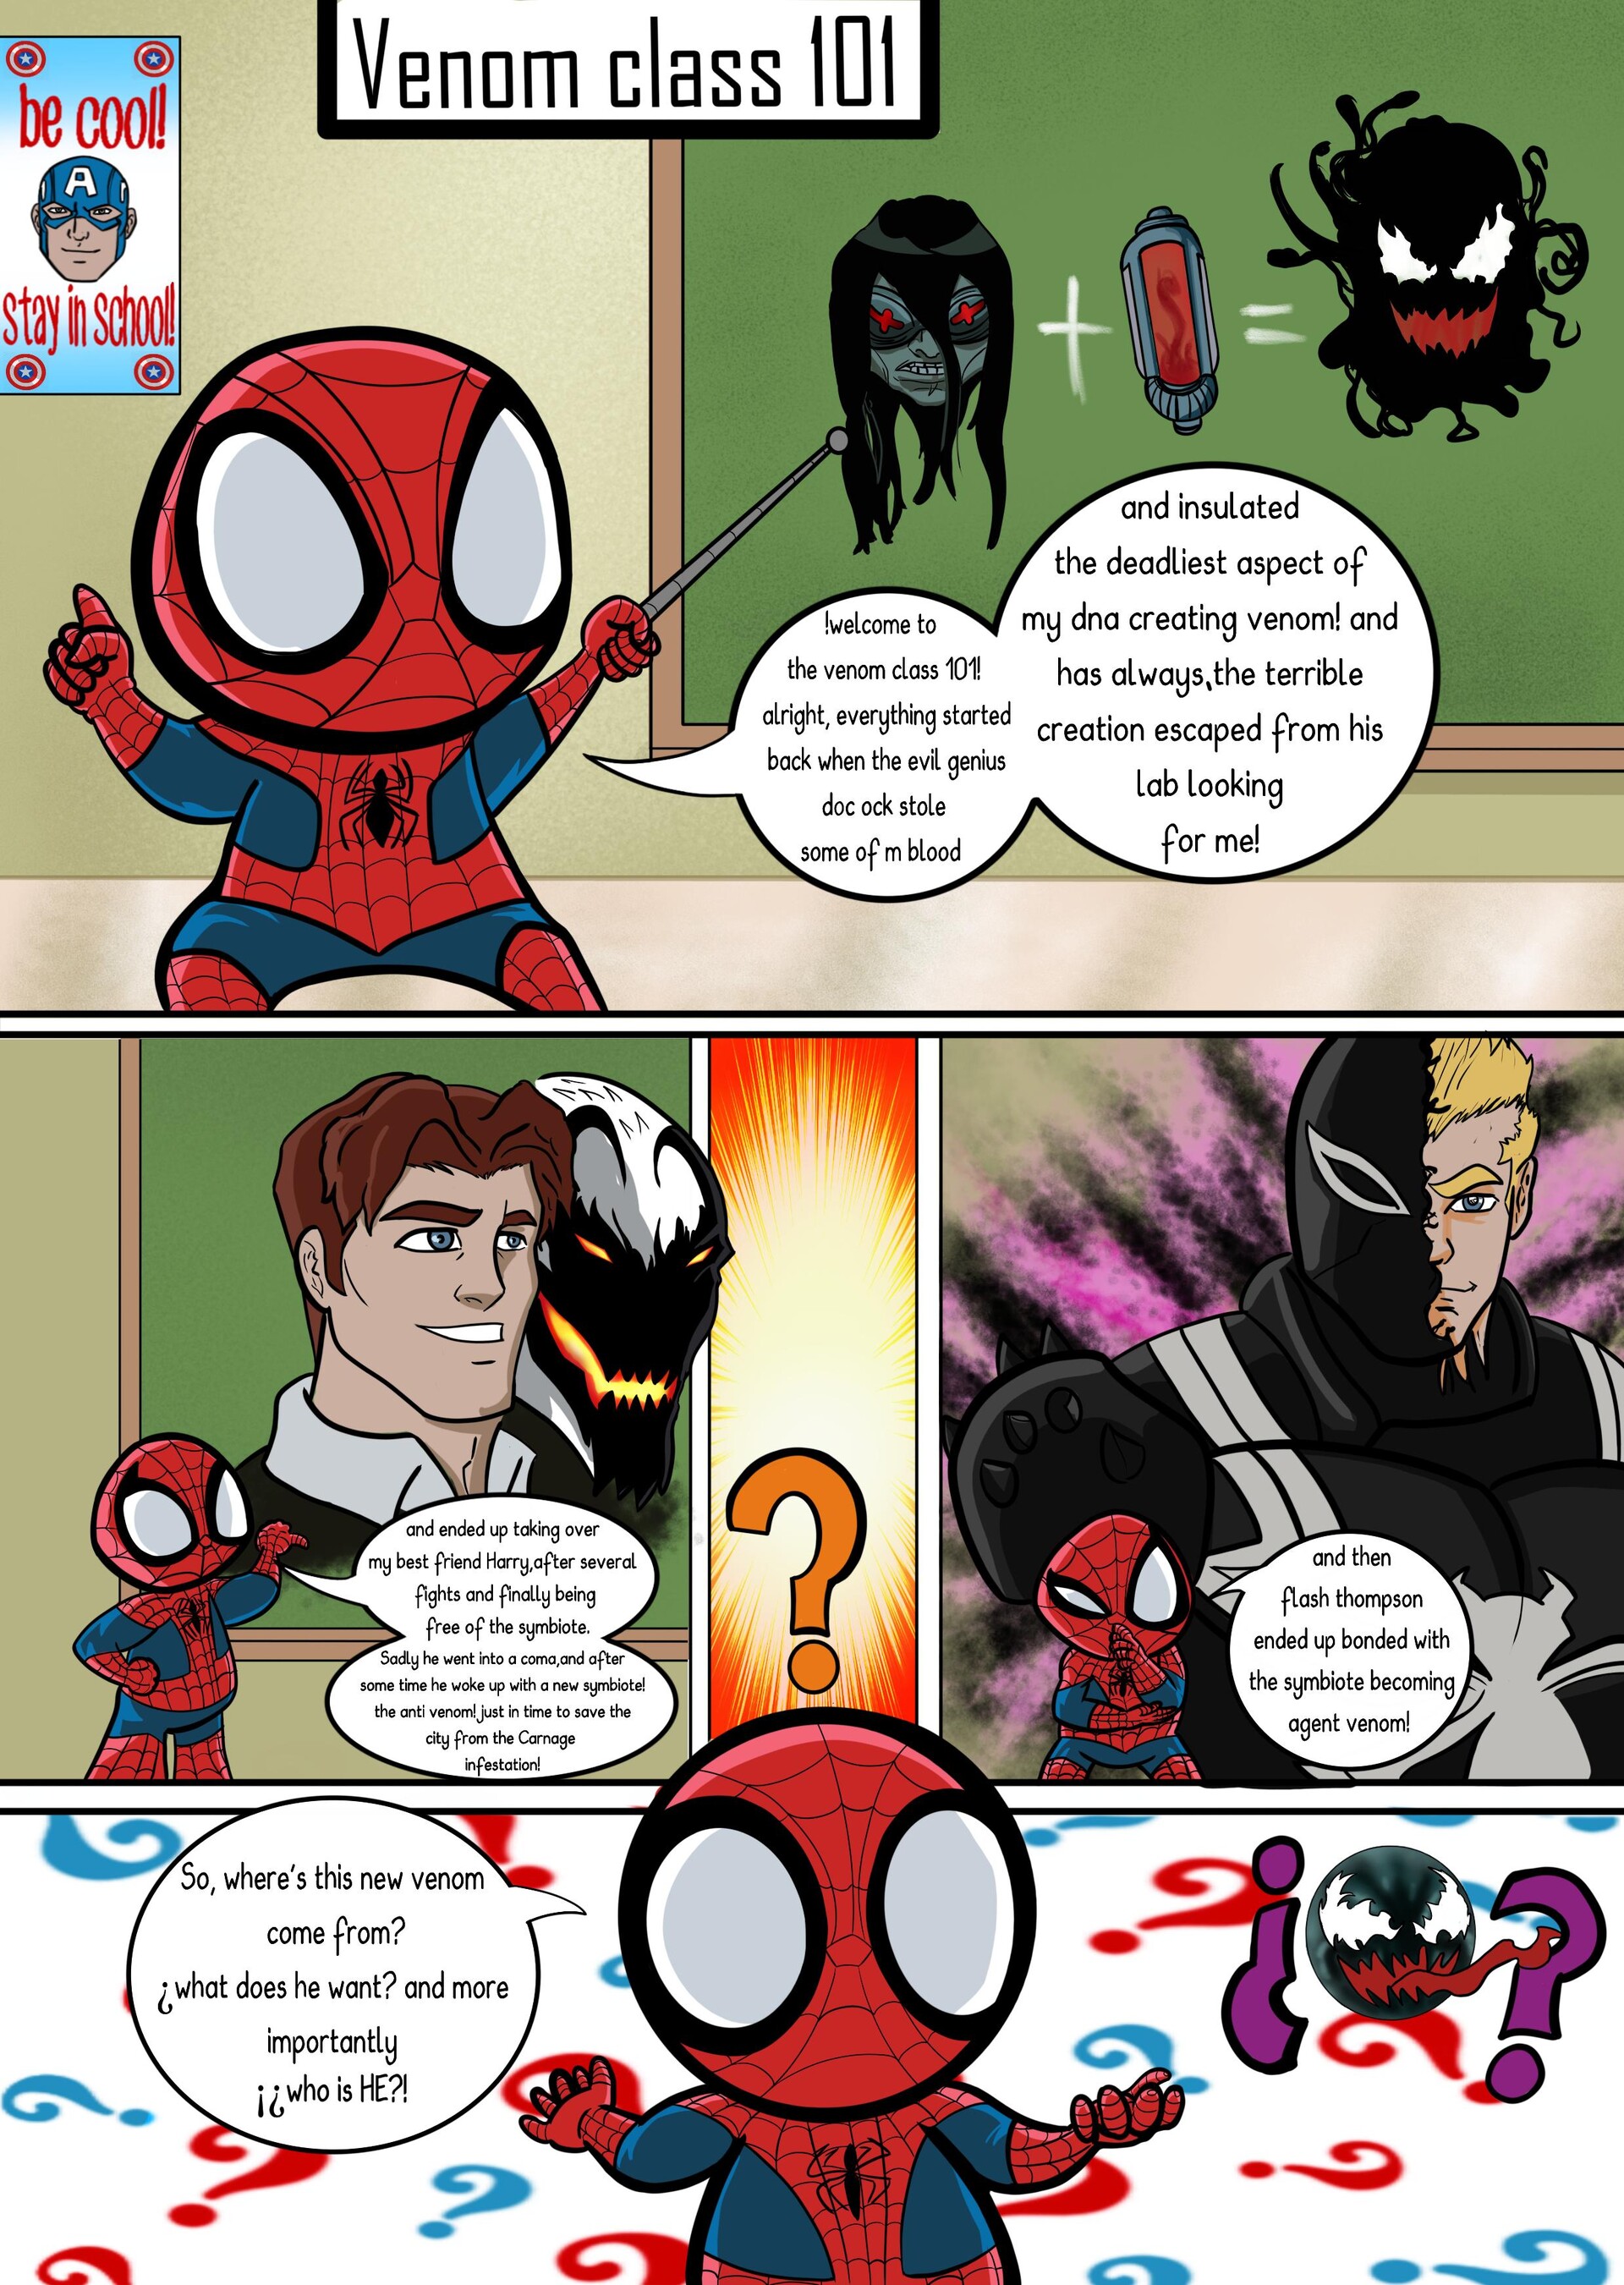 ArtStation - Ultimate Spider Man Venom history class 101